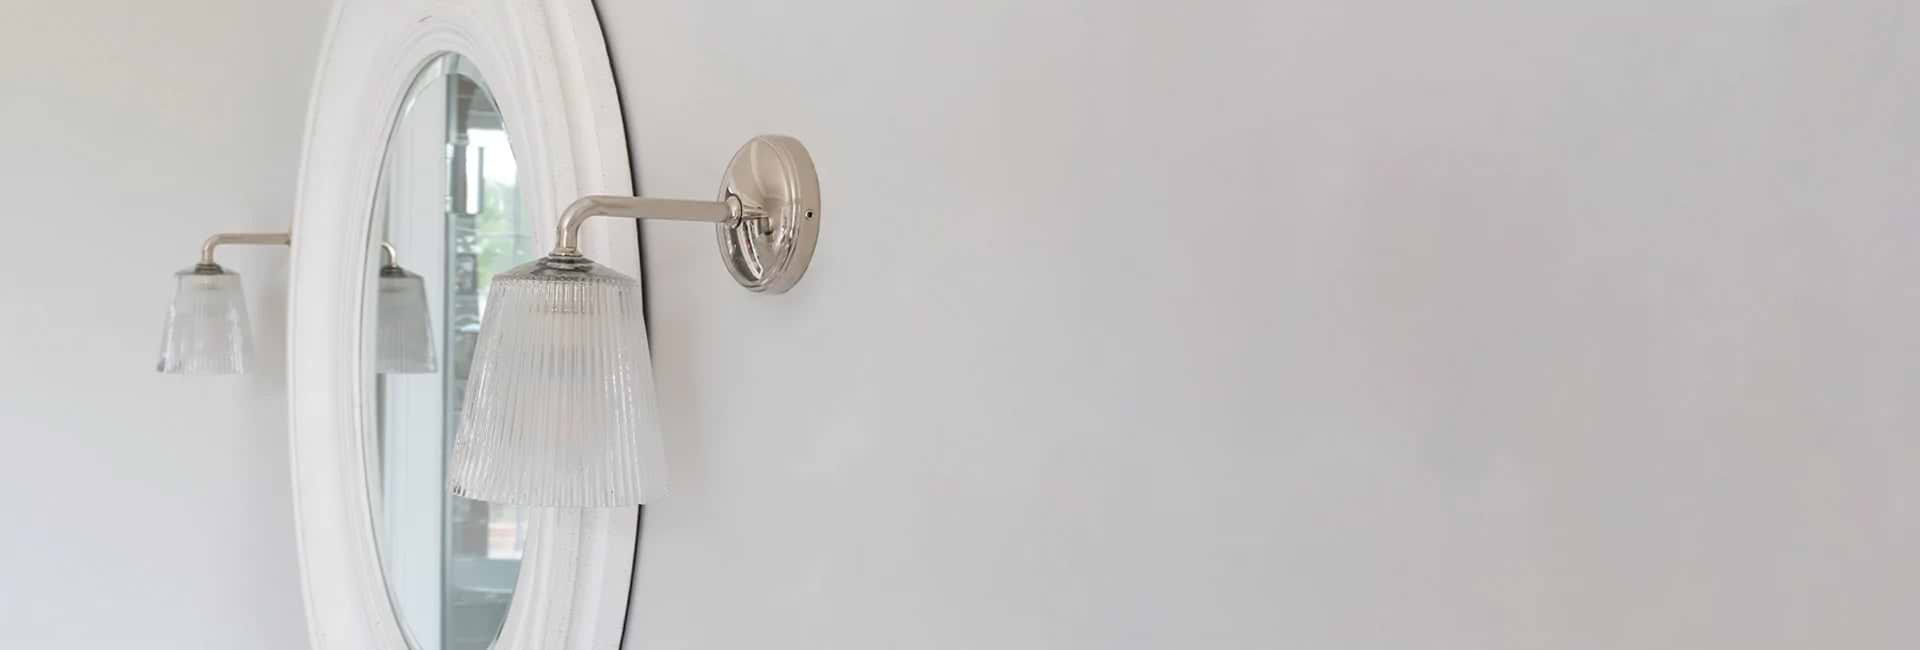 Zwei Wandleuchten Poliertes Nickel an einer weissen Wand links und rechts von einem Badezimmerspiegel